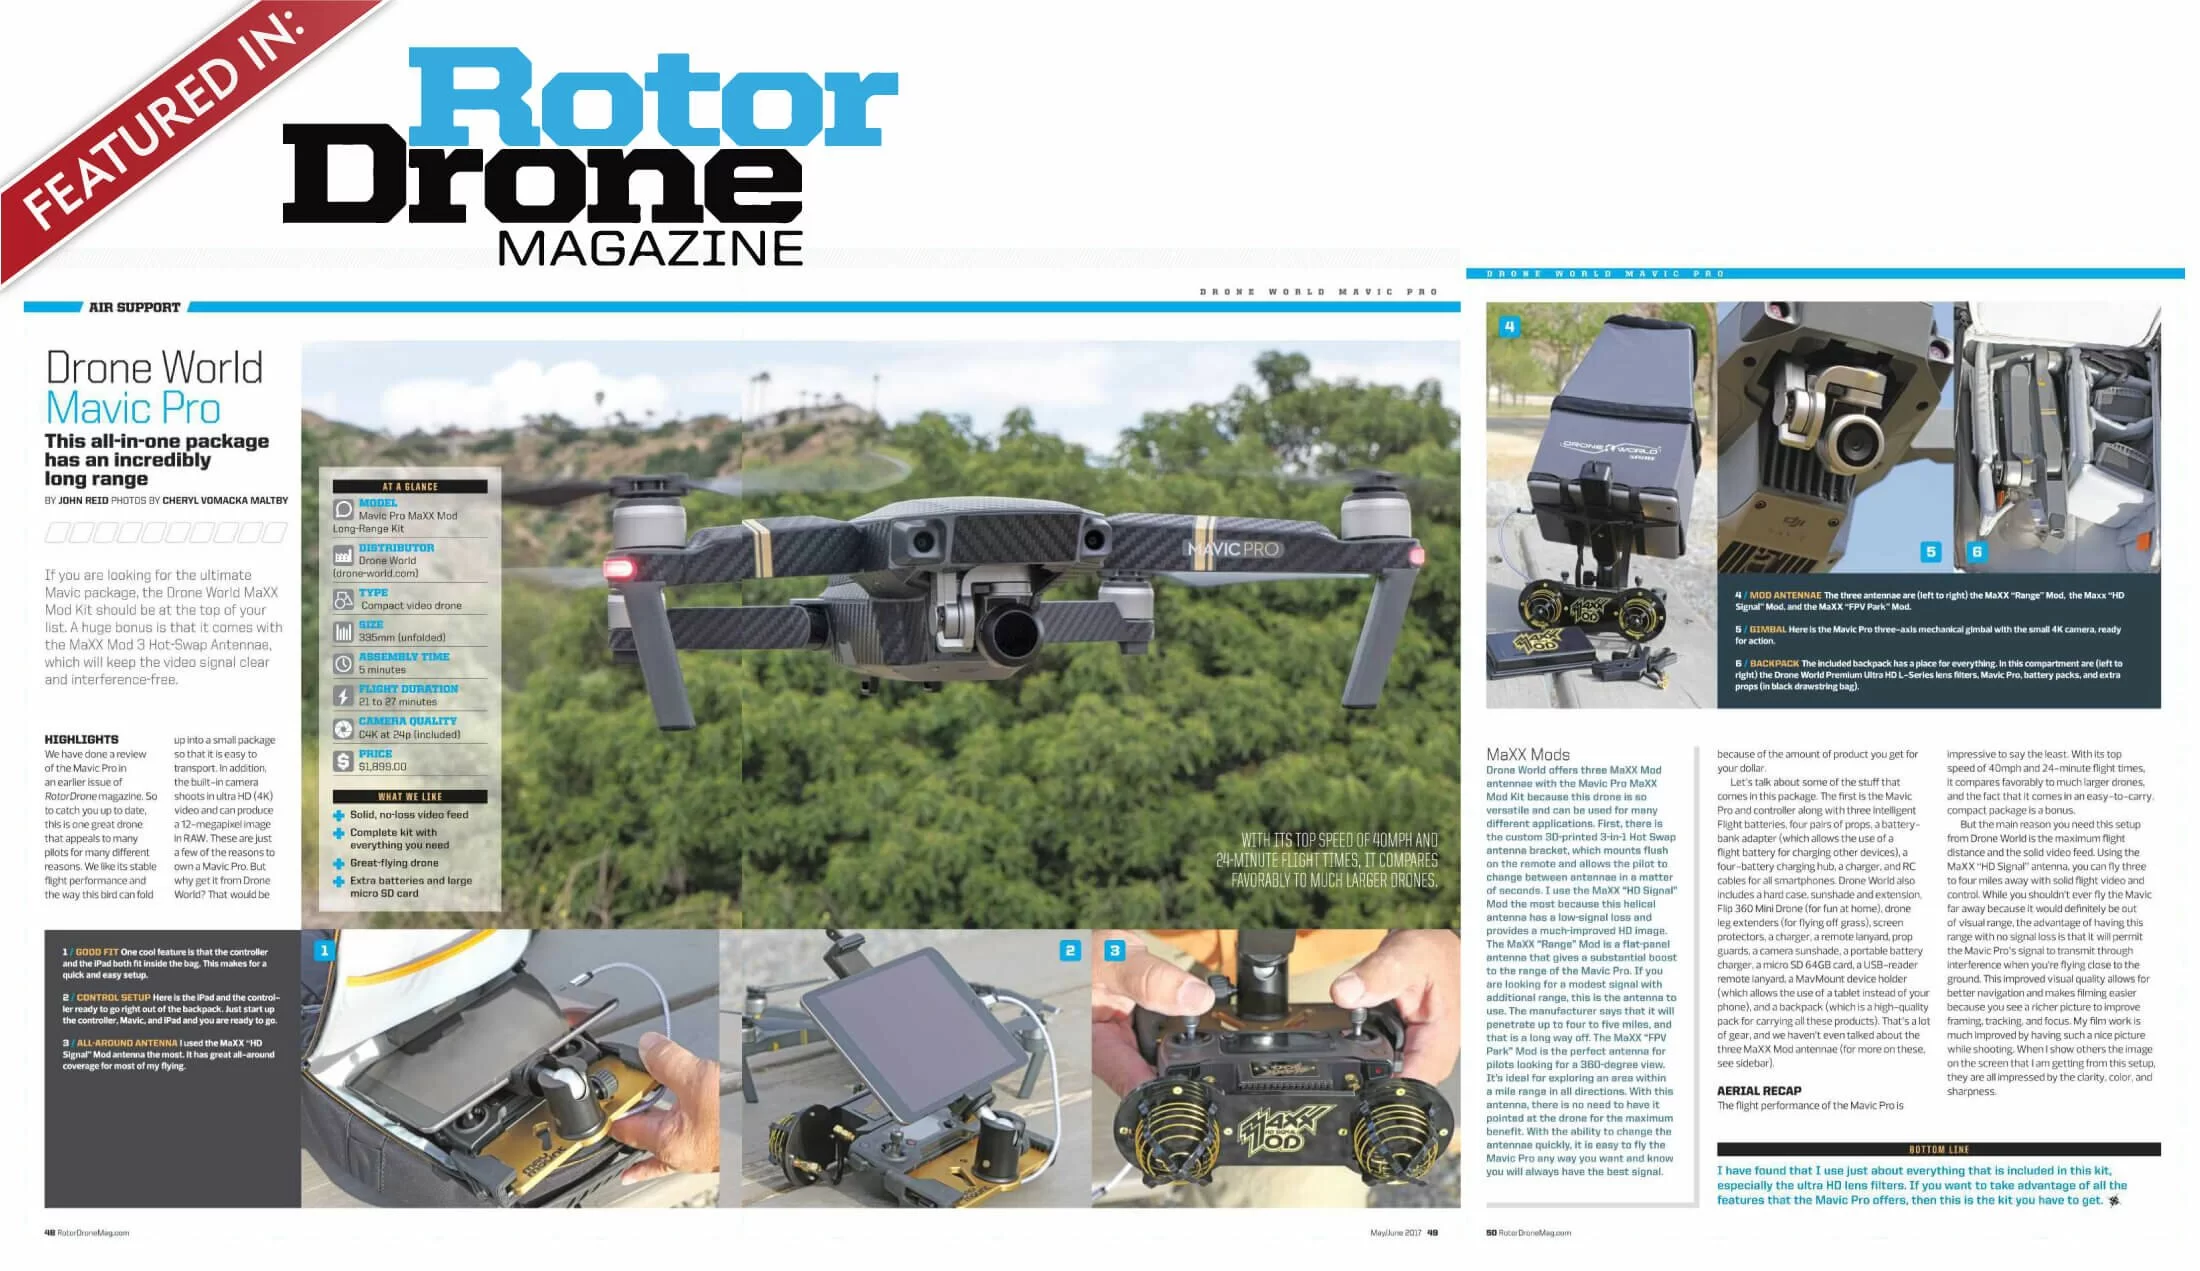 Drone World Mavic Pro in Rotor Drone Magazine